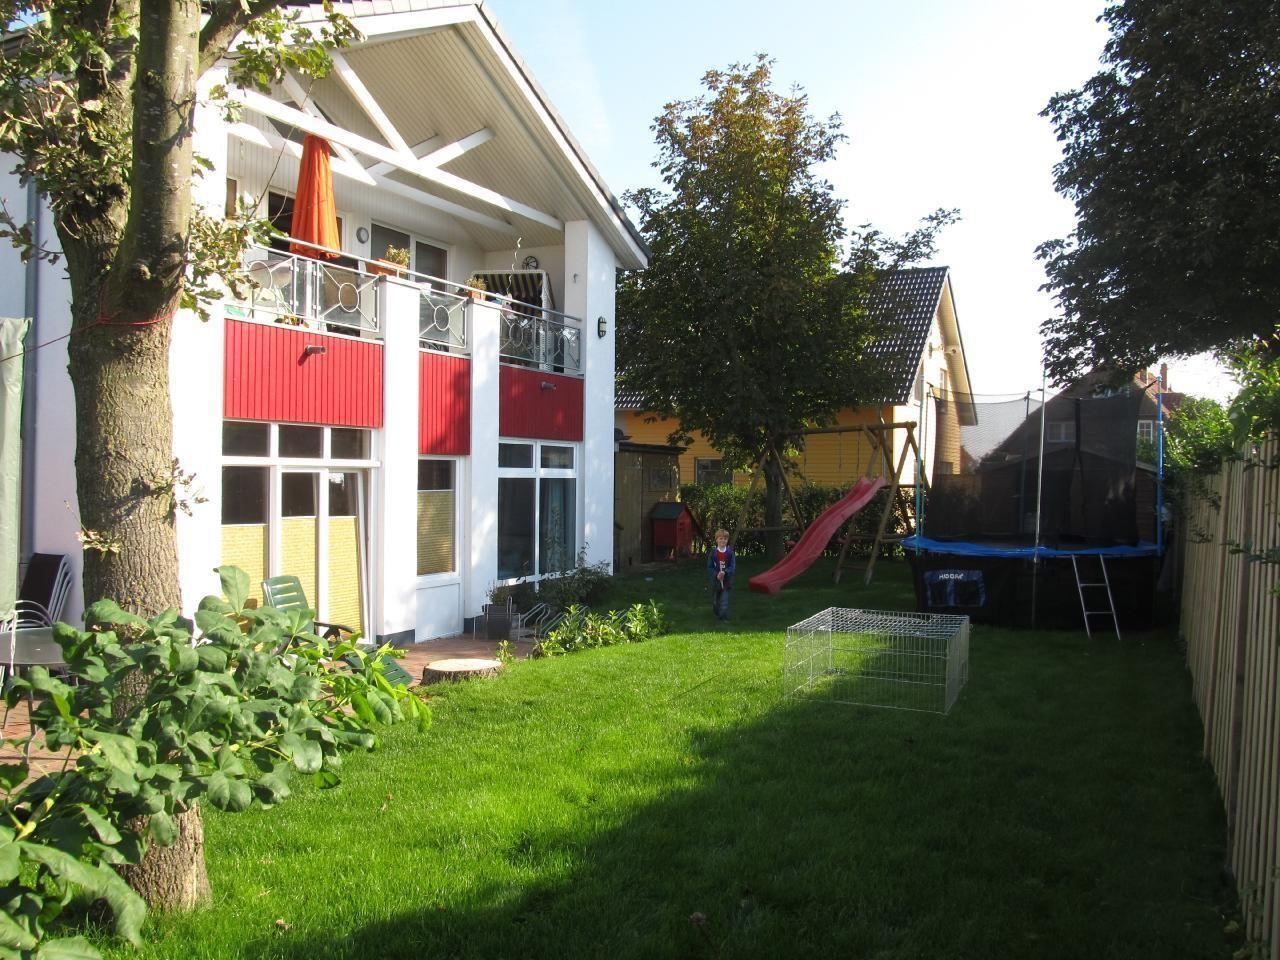 Appartement in Wulfen mit Garten, Grill und Terras   Fehmarn